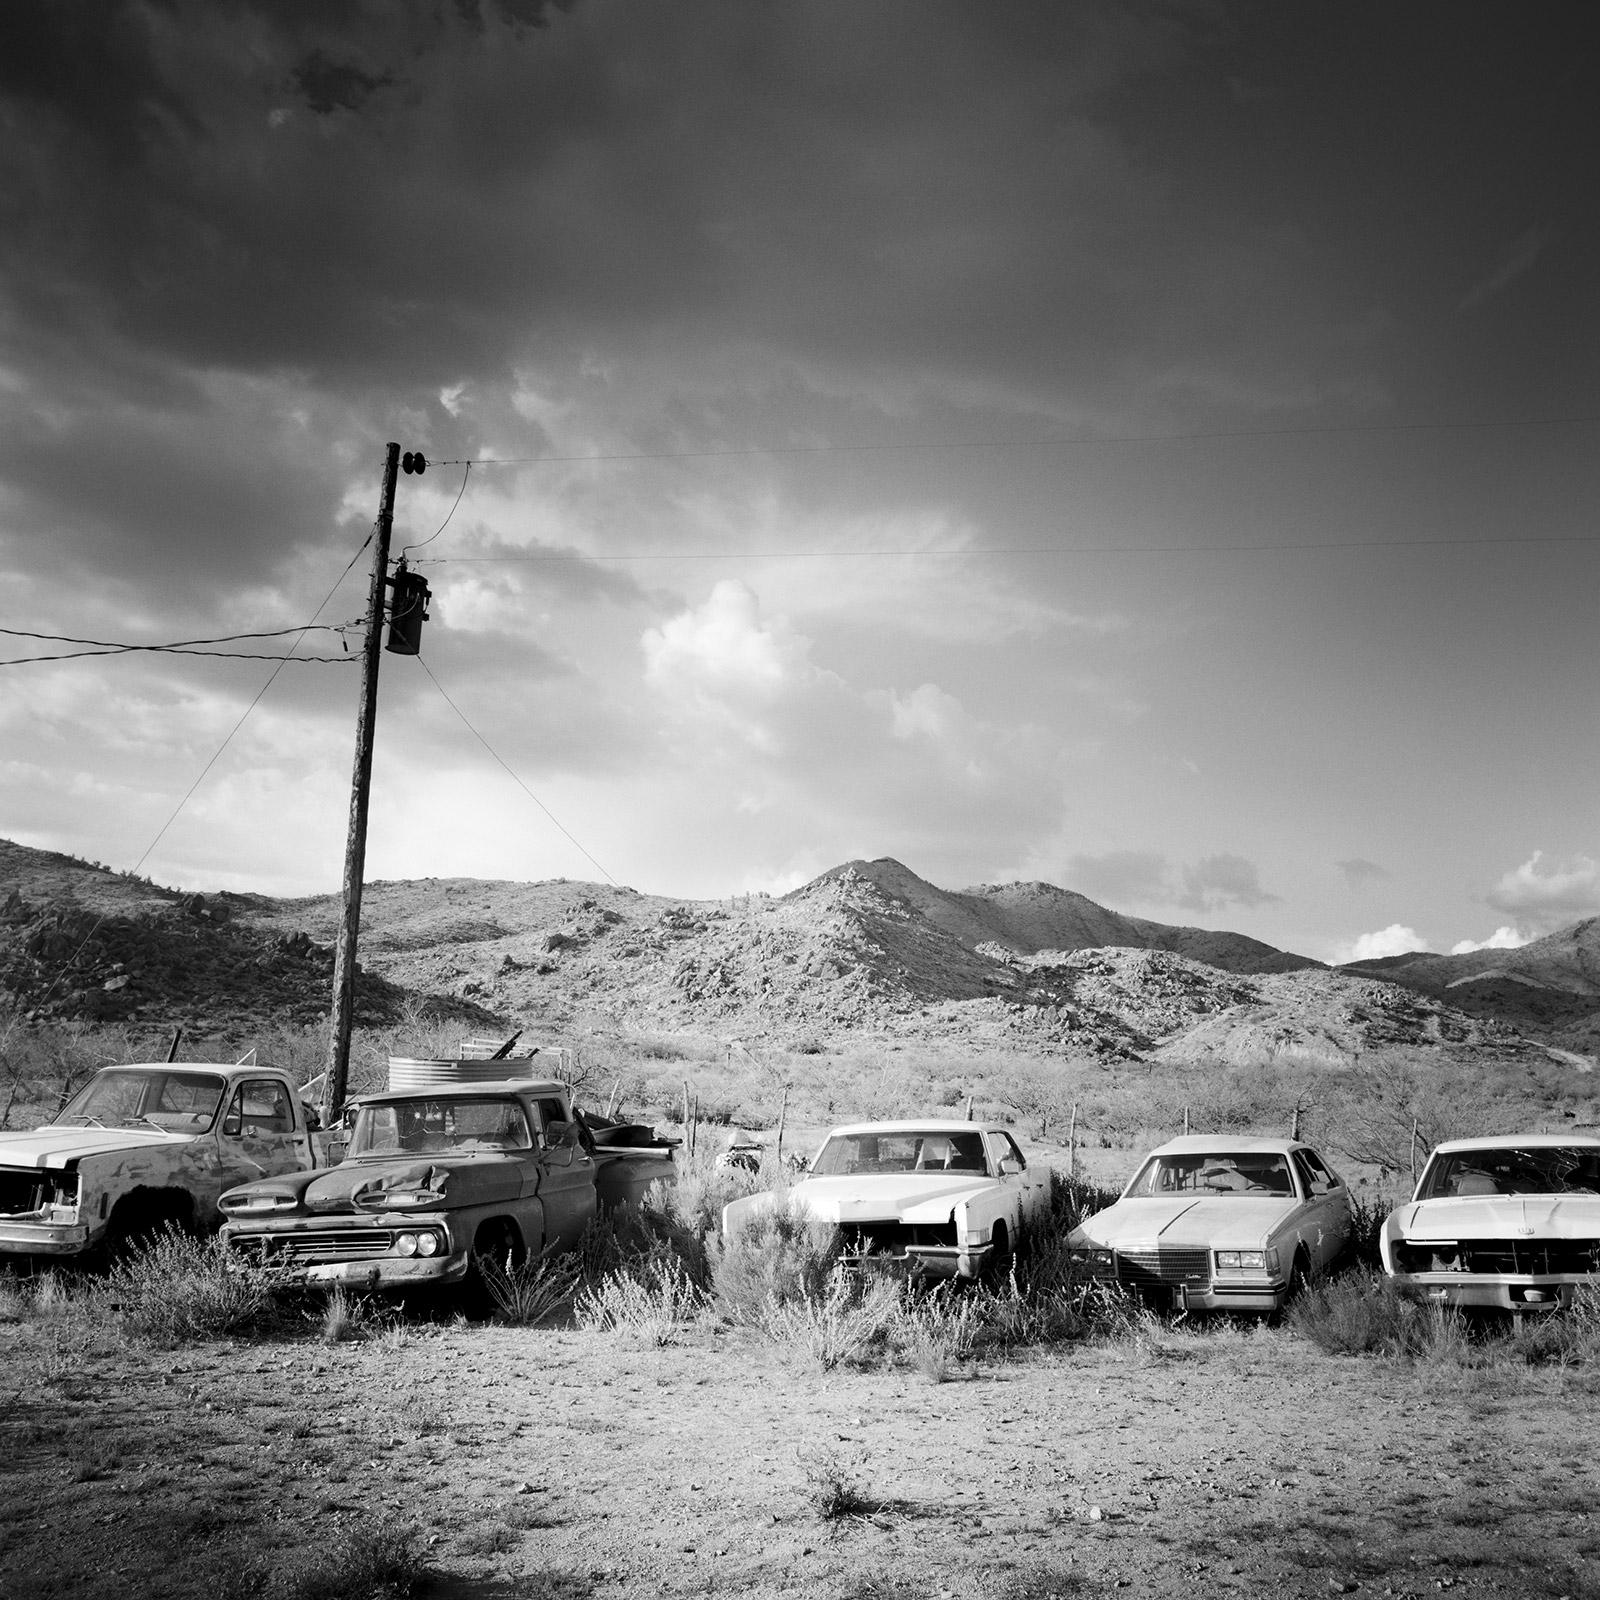 Gerald Berghammer Landscape Photograph – Junkyard, Wüste, Route 66, Arizona, USA, Schwarz-Weiß-Fotografie, Landschaft